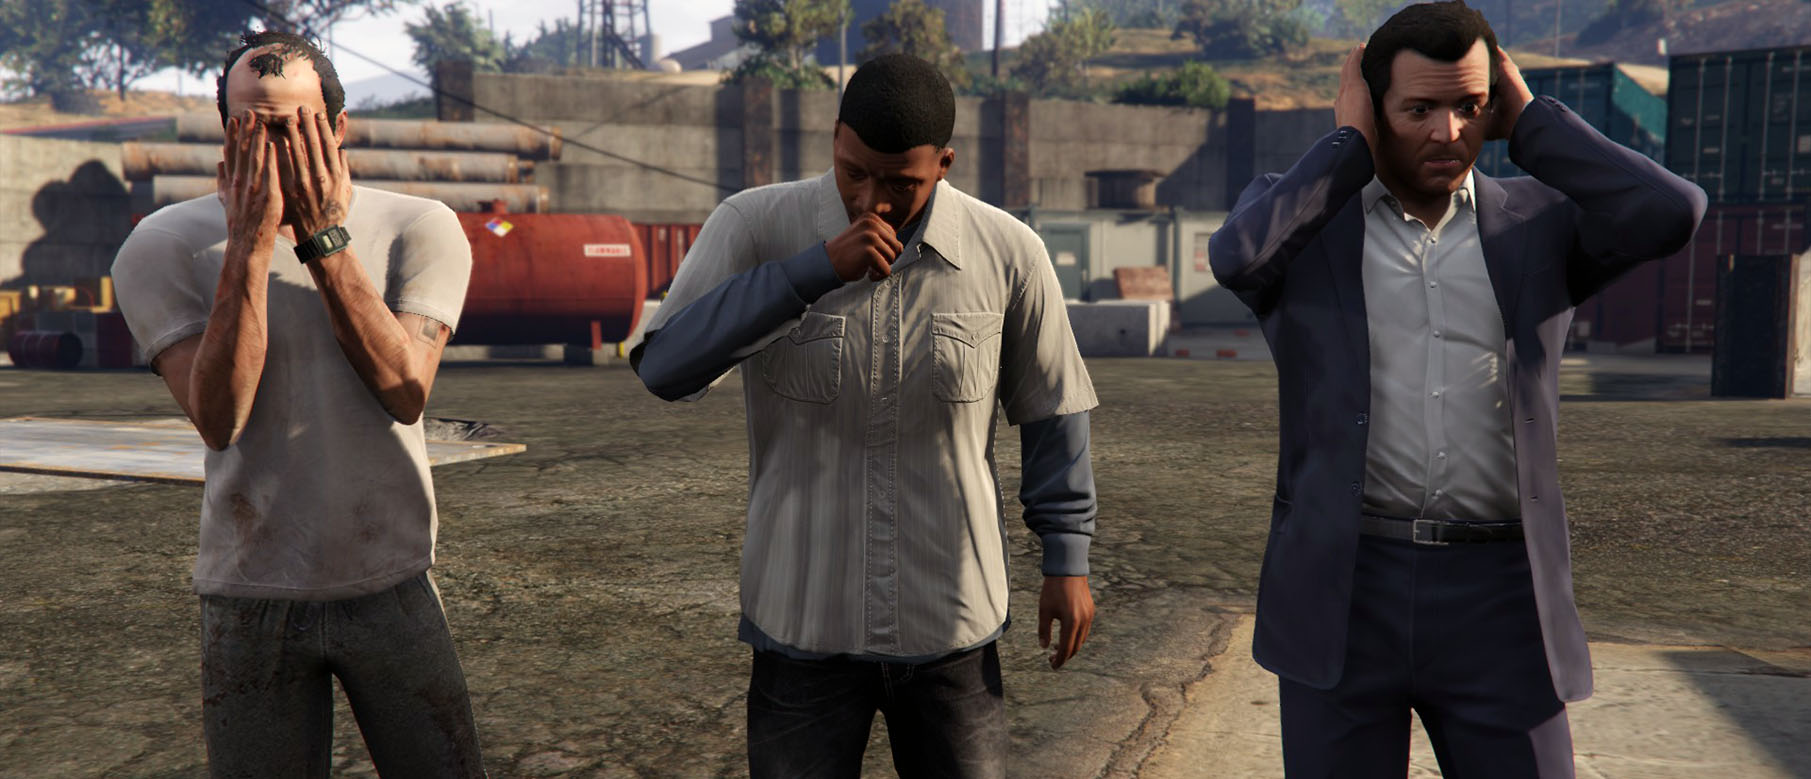 Изображение к Франклин тизерит сюжетное DLC для Grand Theft Auto V